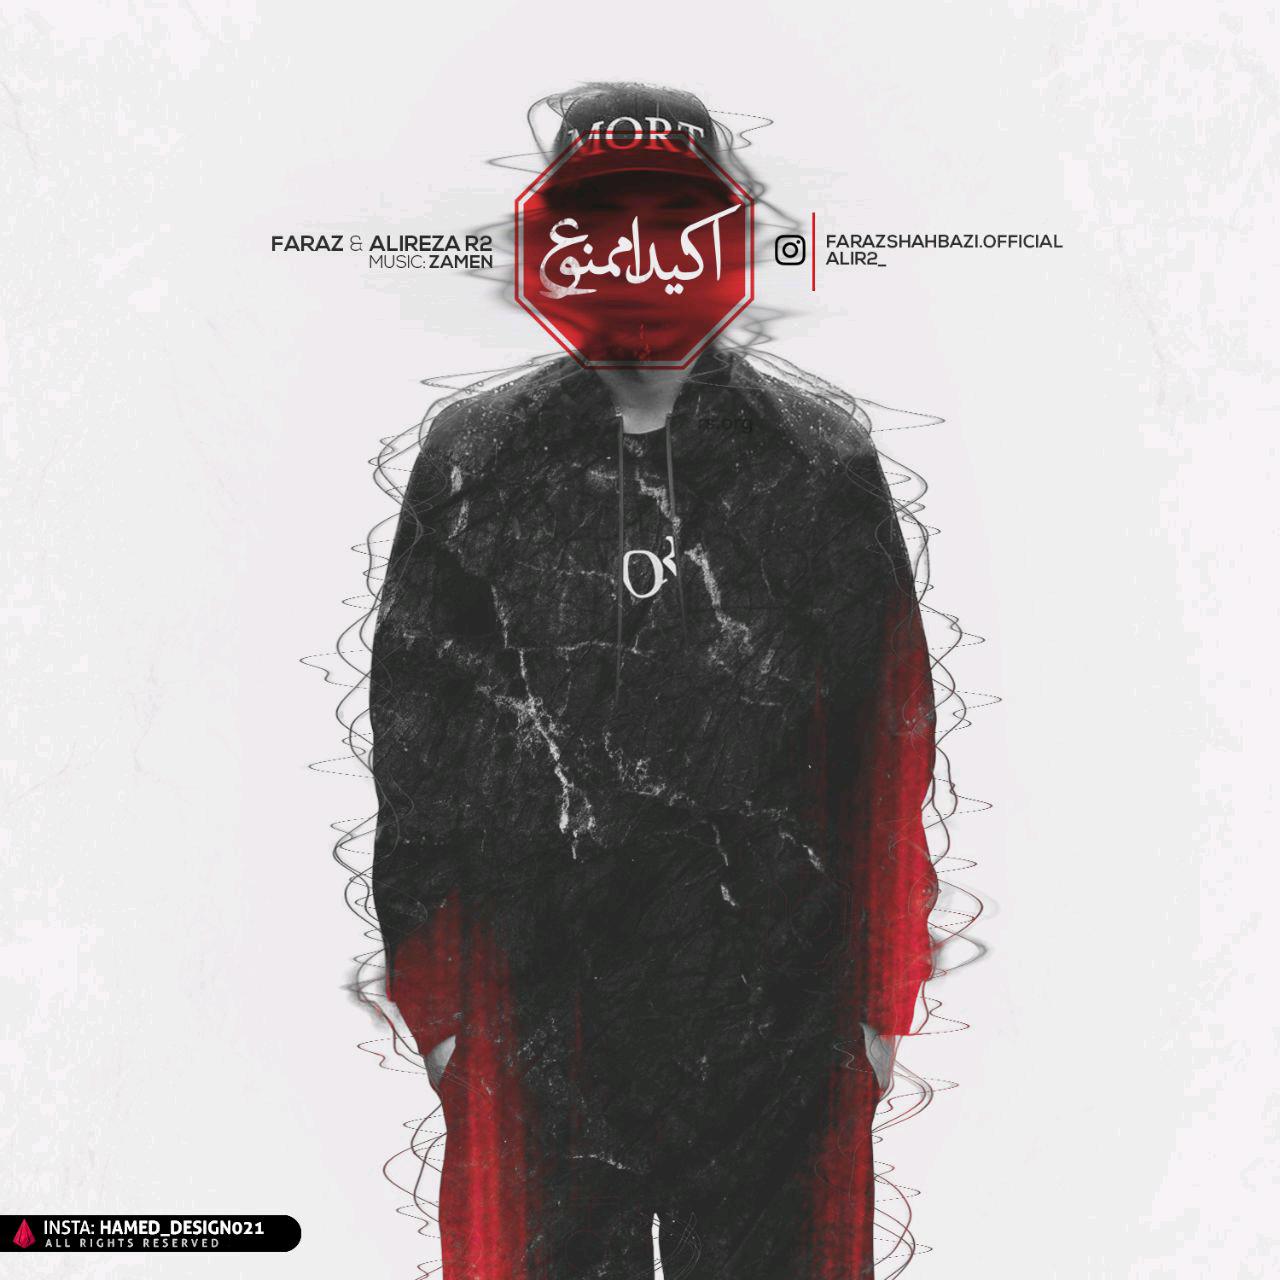  دانلود آهنگ جدید Ali R2 - Akidan Mamnoo | Download New Music By Ali R2 & Faraz  - Akidan Mamnoo